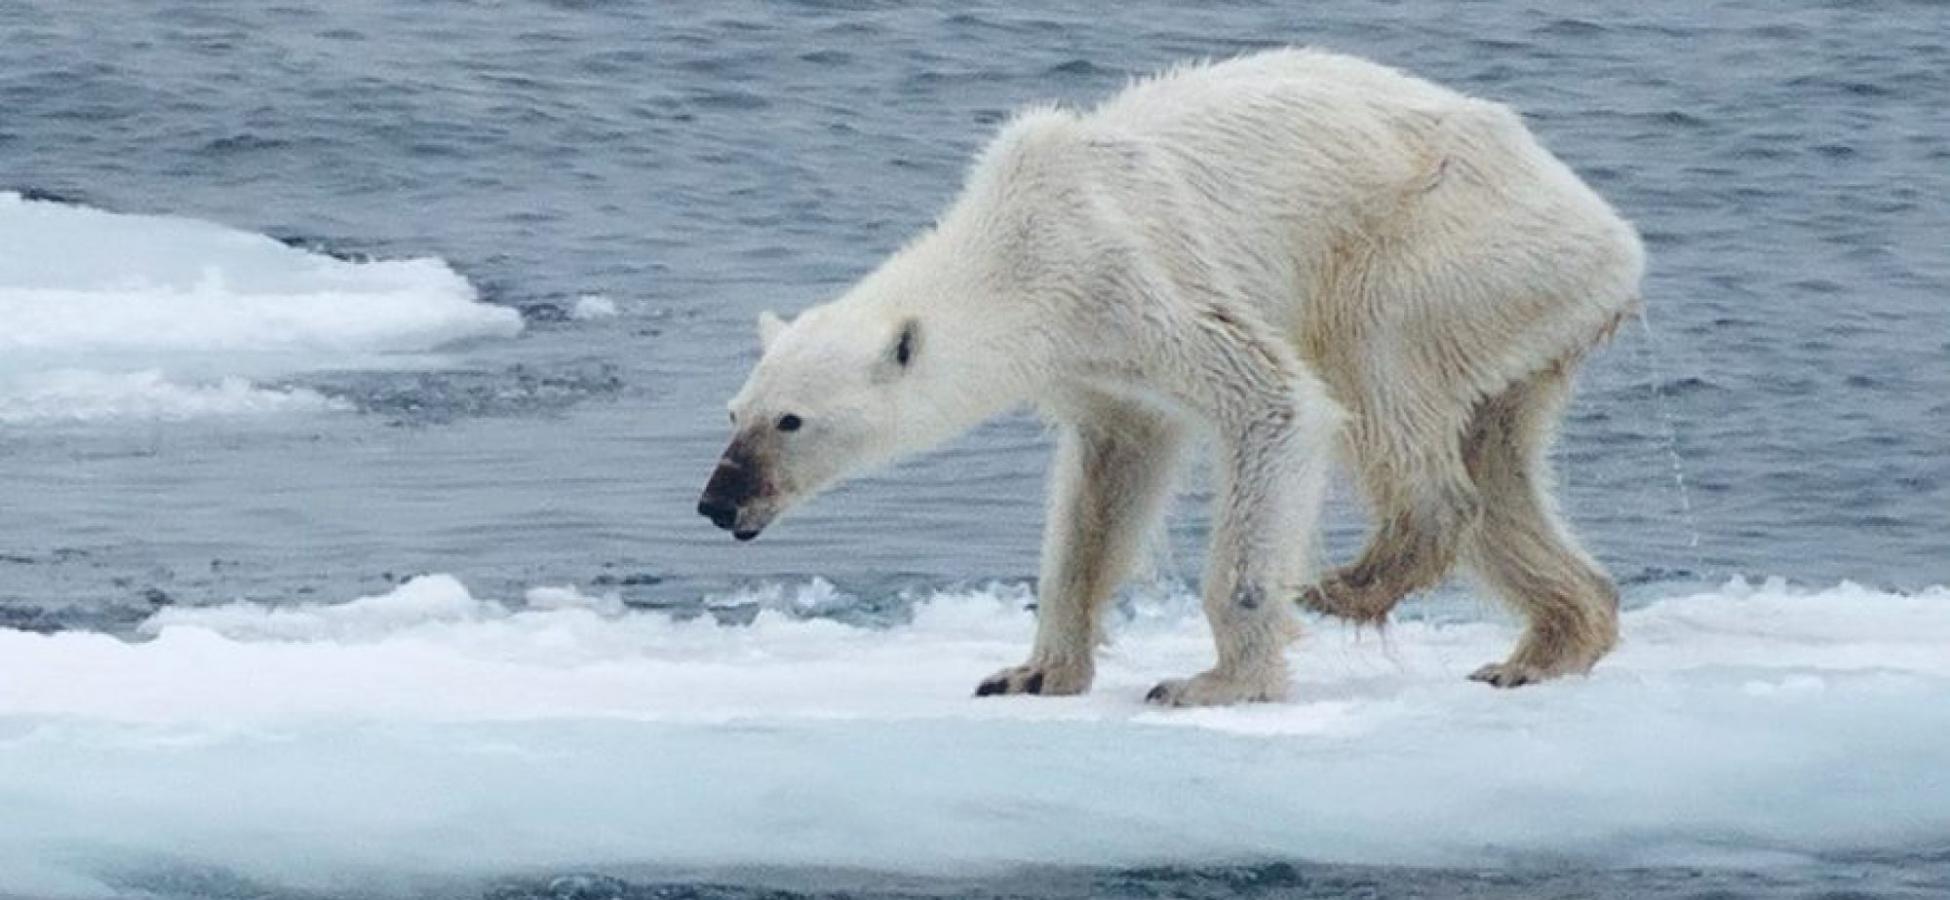 摄影师卡斯汀•朗恩伯格(Kerstin Langenberger)拍摄的骨瘦嶙峋北极熊